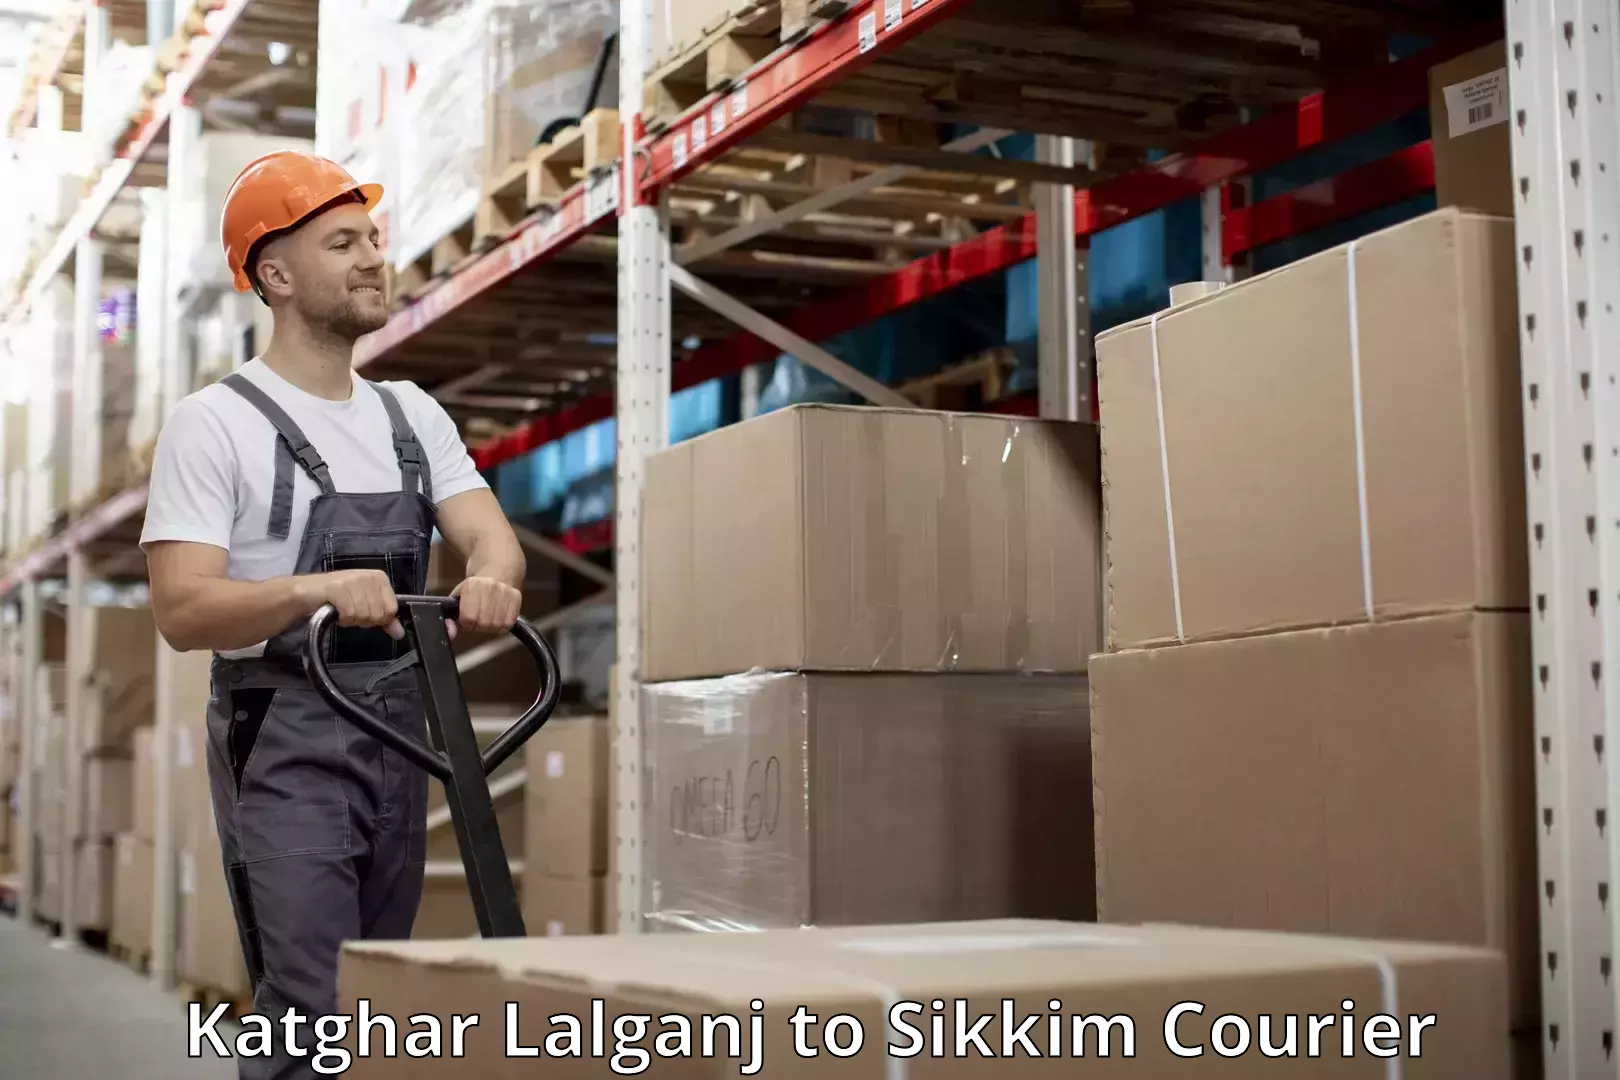 Baggage transport scheduler Katghar Lalganj to Sikkim